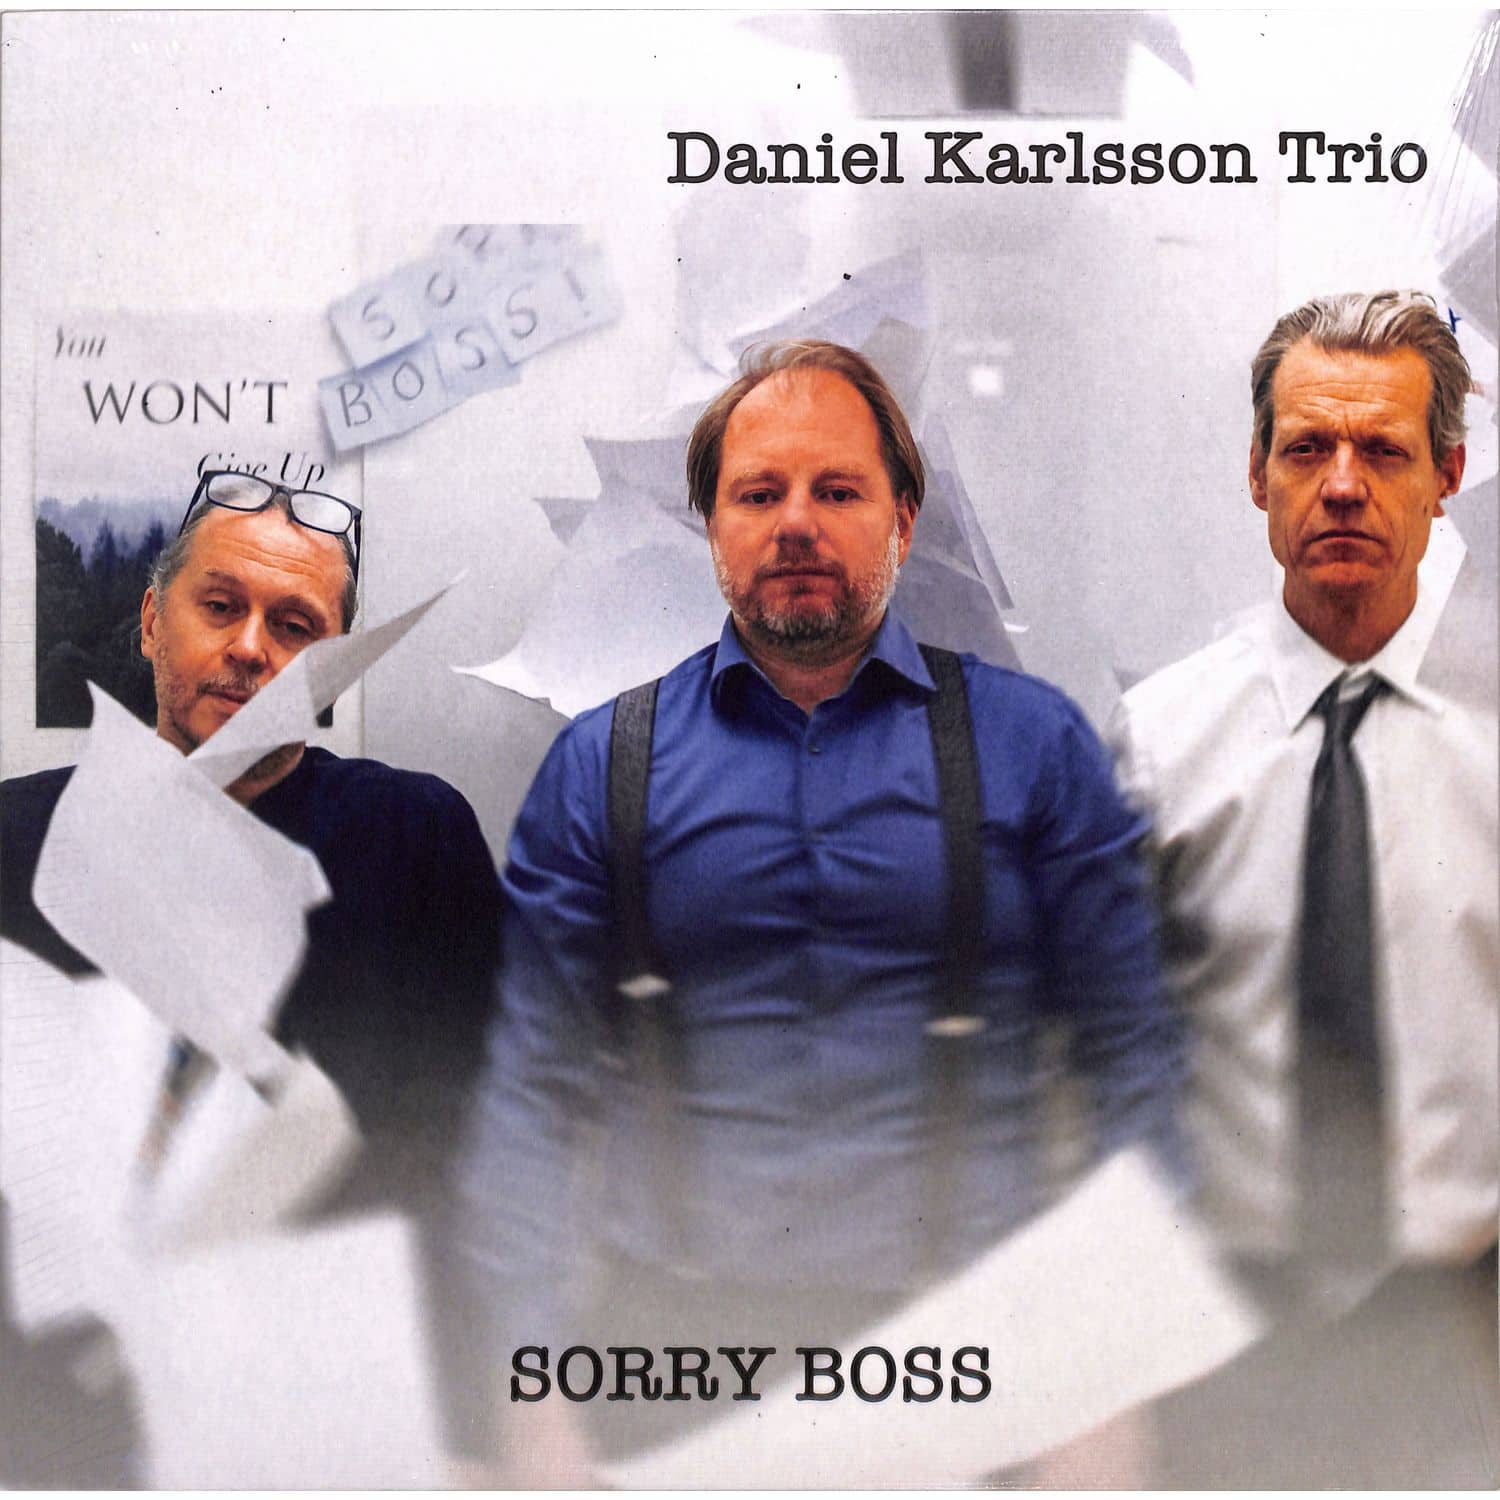 Daniel Karlsson Trio - SORRY BOSS 